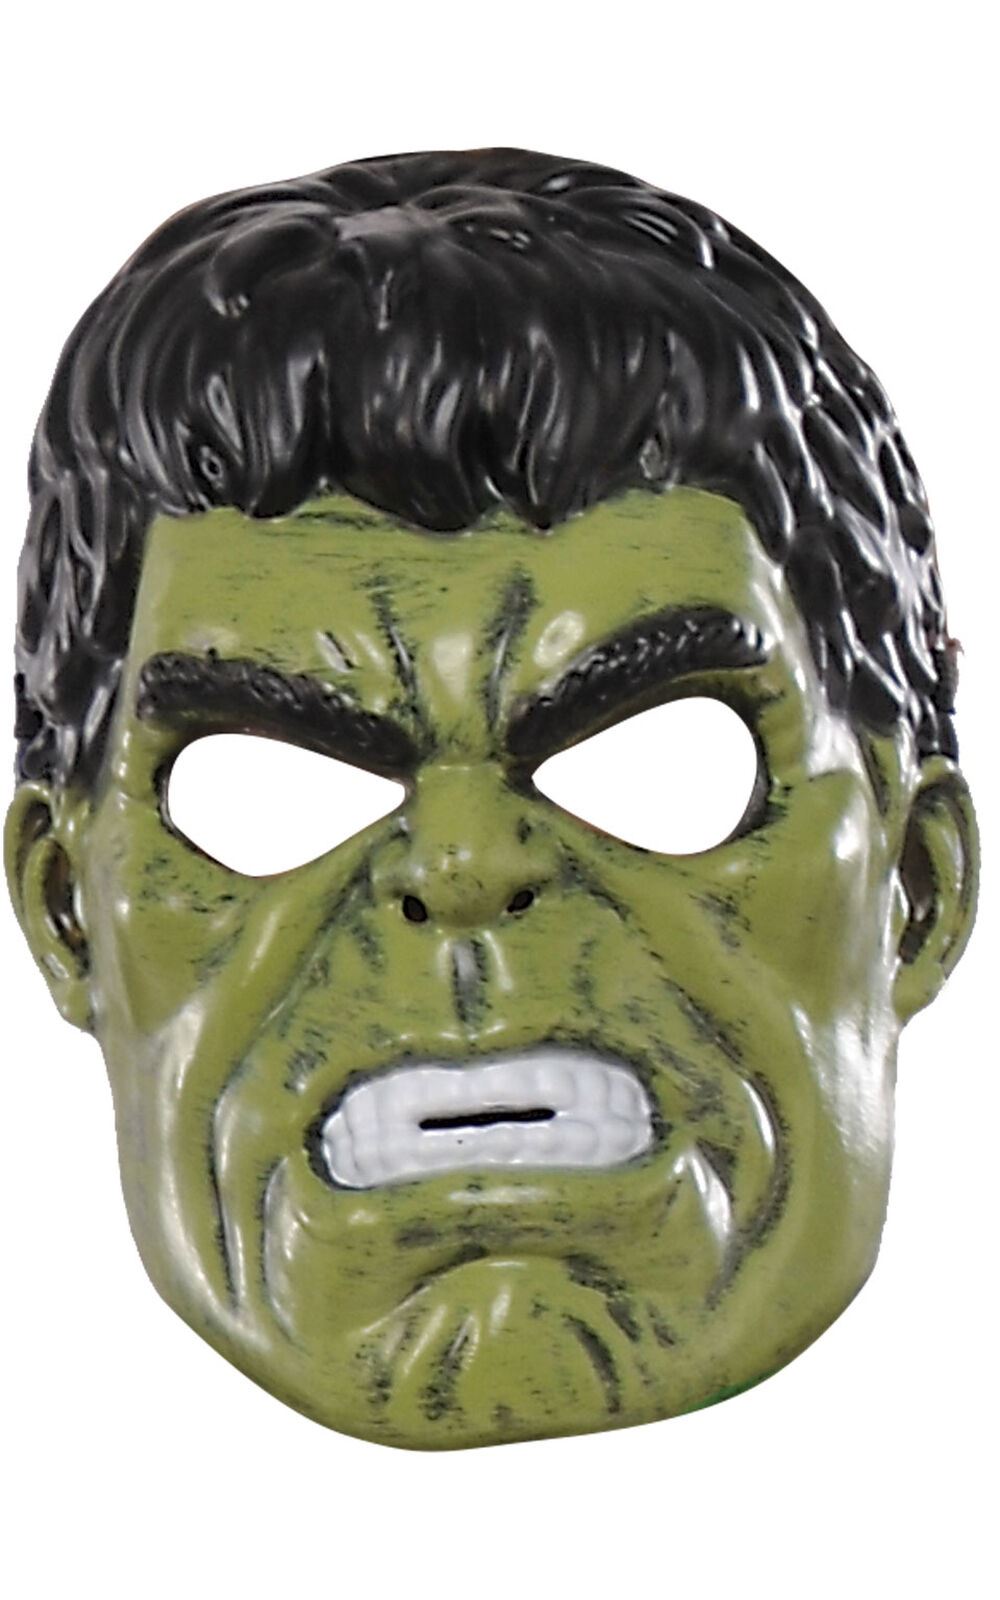 Déguisement classique Hulk série animée - Avengers - Vert - Garçon